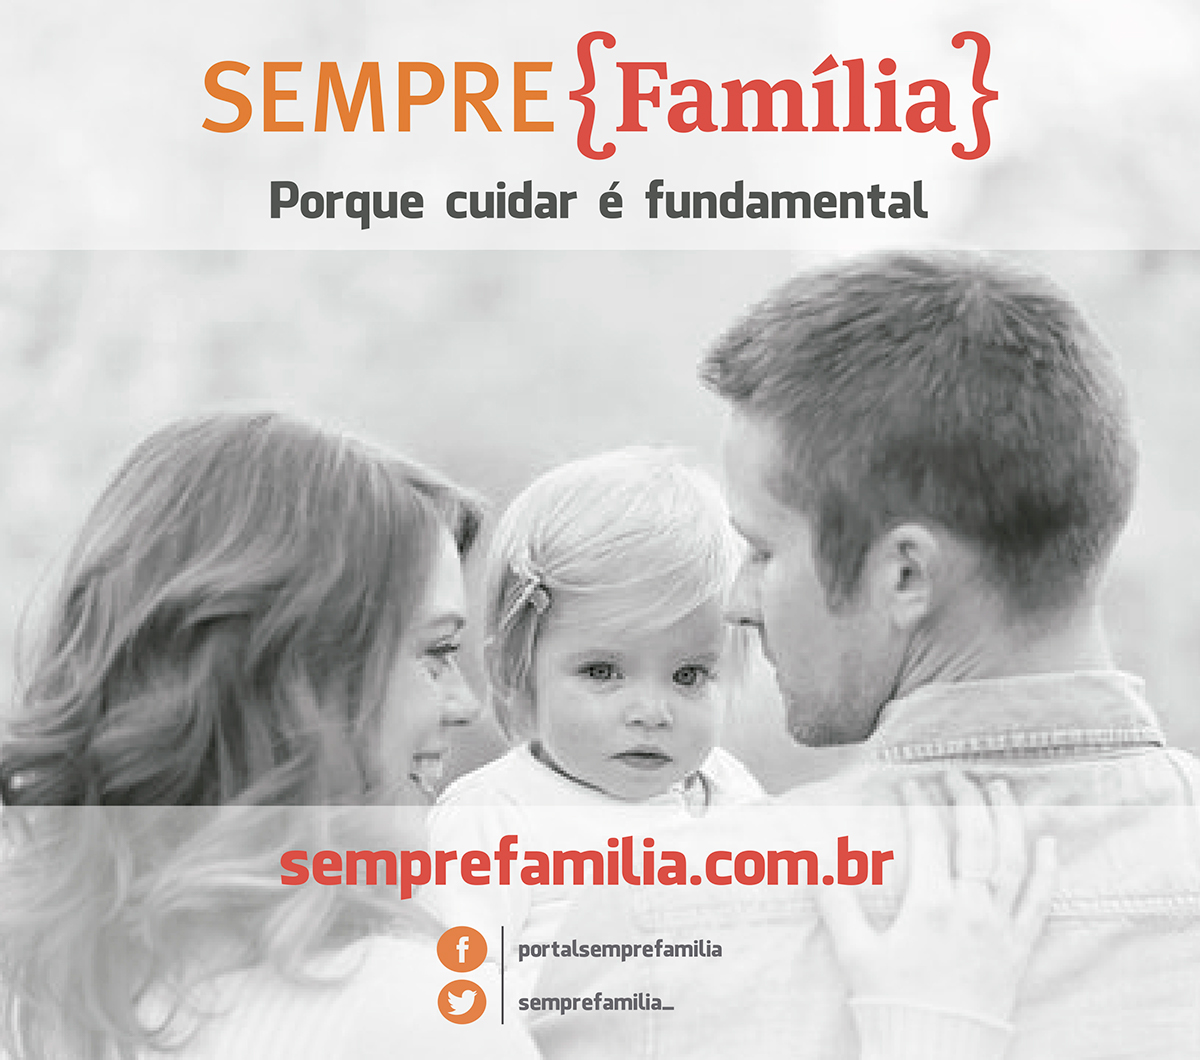 site grpcom identidade visual cartão de visitas papel timbrado banner anúncio revista jornal Layout familia Sempre familia